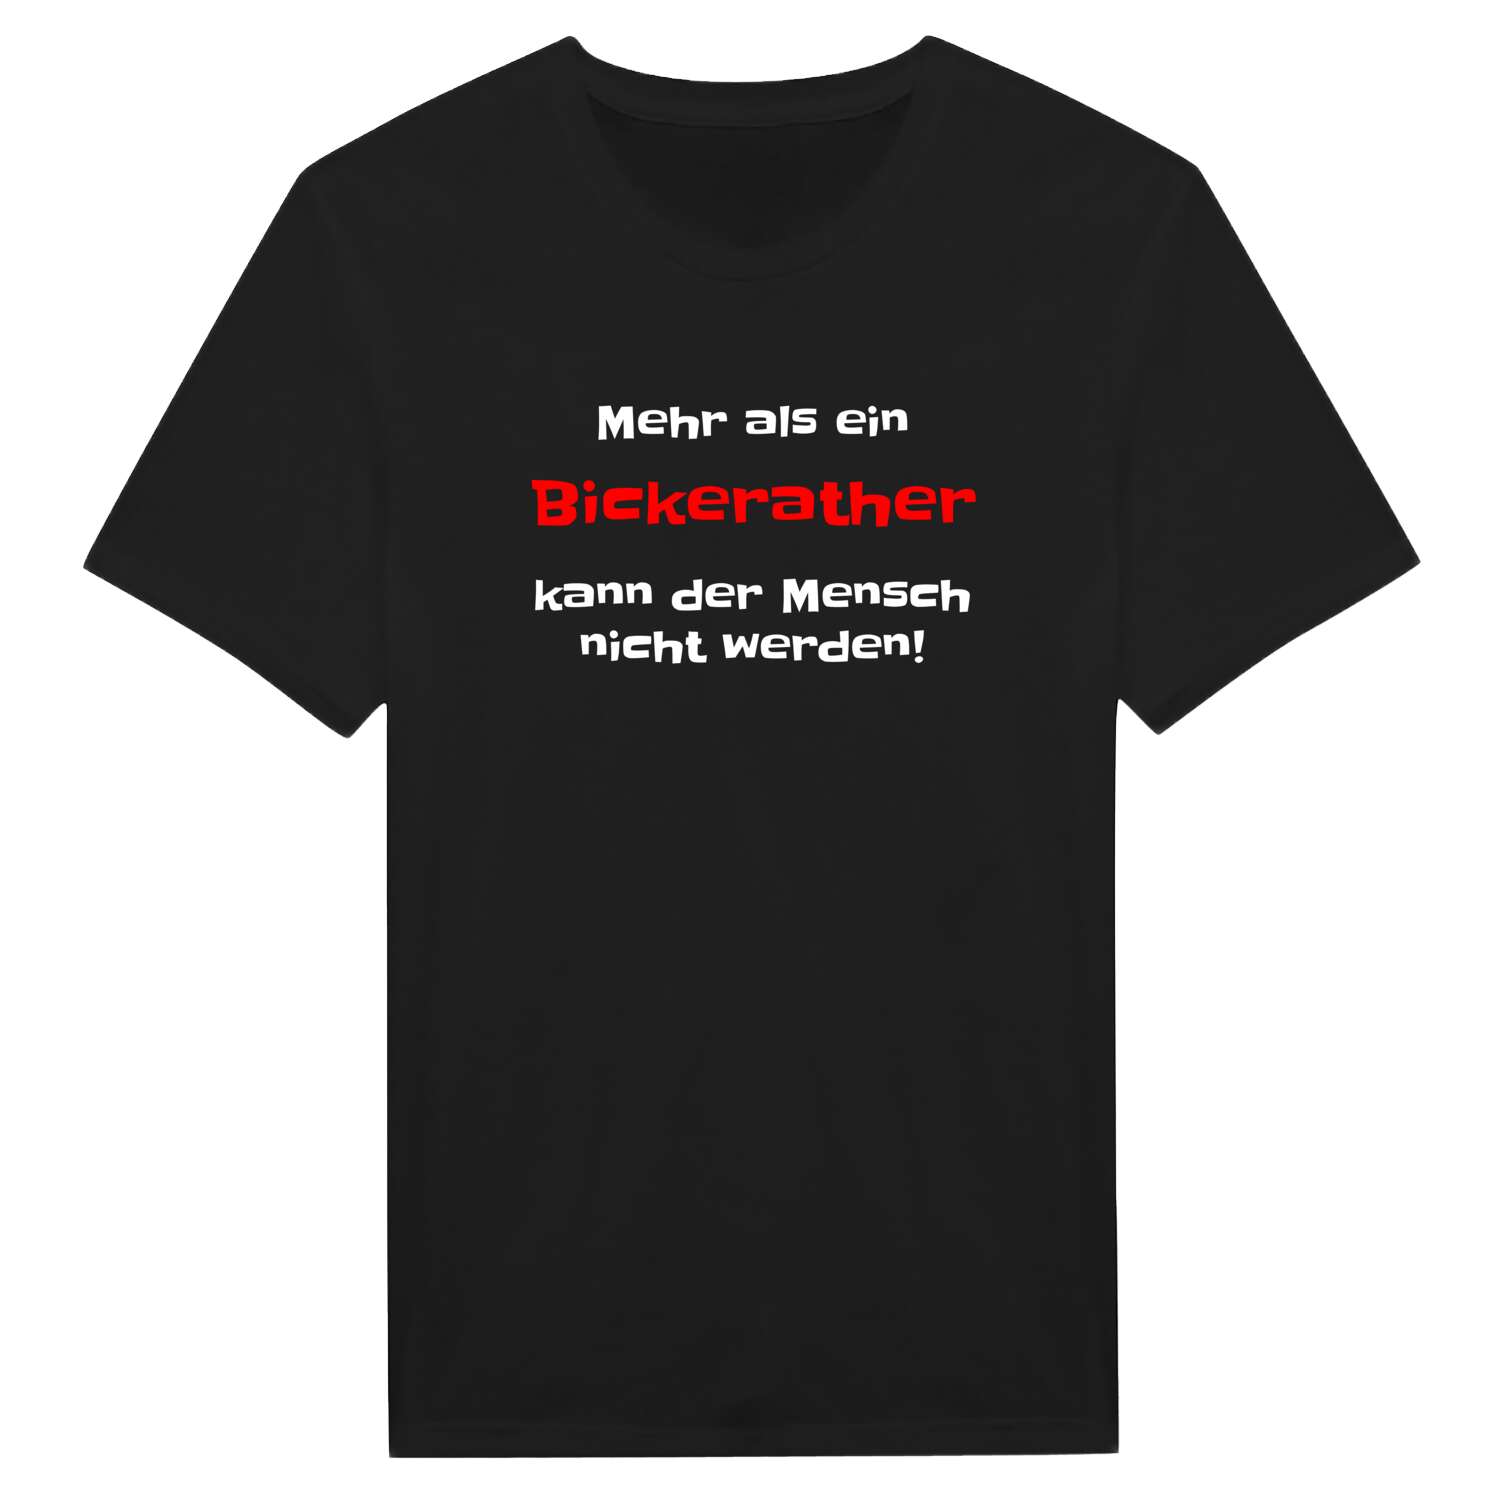 Bickerath T-Shirt »Mehr als ein«